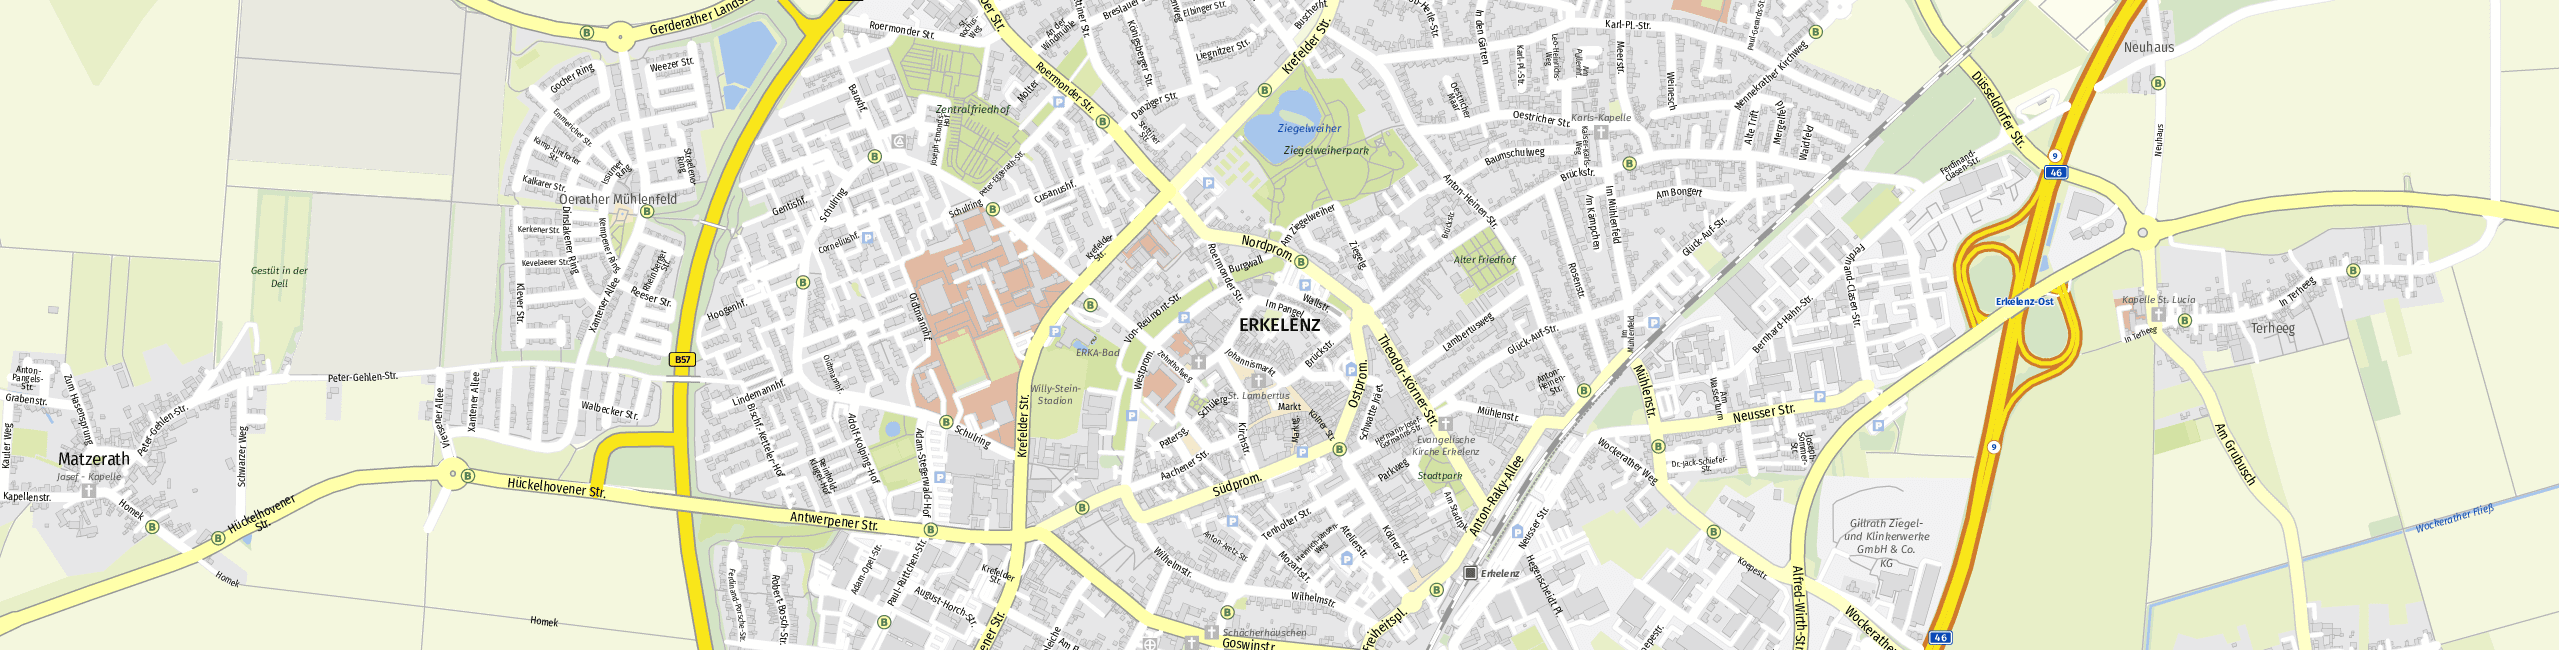 Stadtplan Erkelenz zum Downloaden.